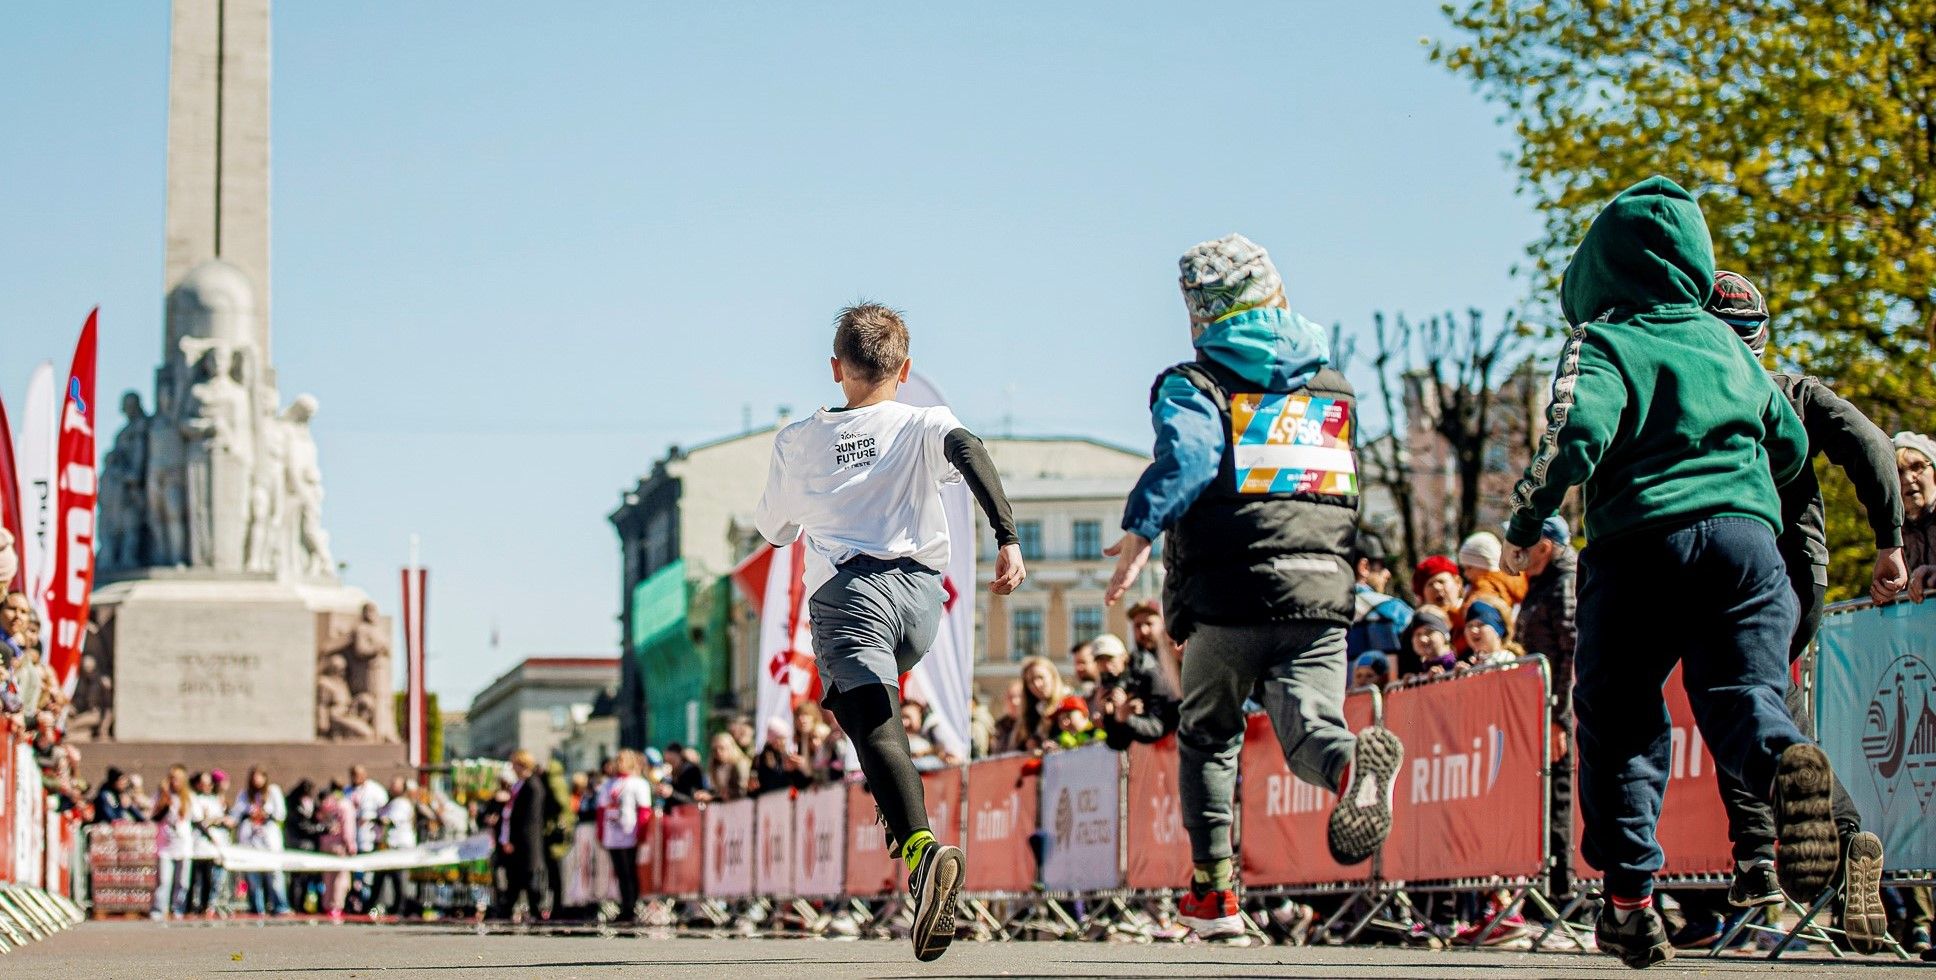 Rimi Riga Marathon 2023 Kids' Day